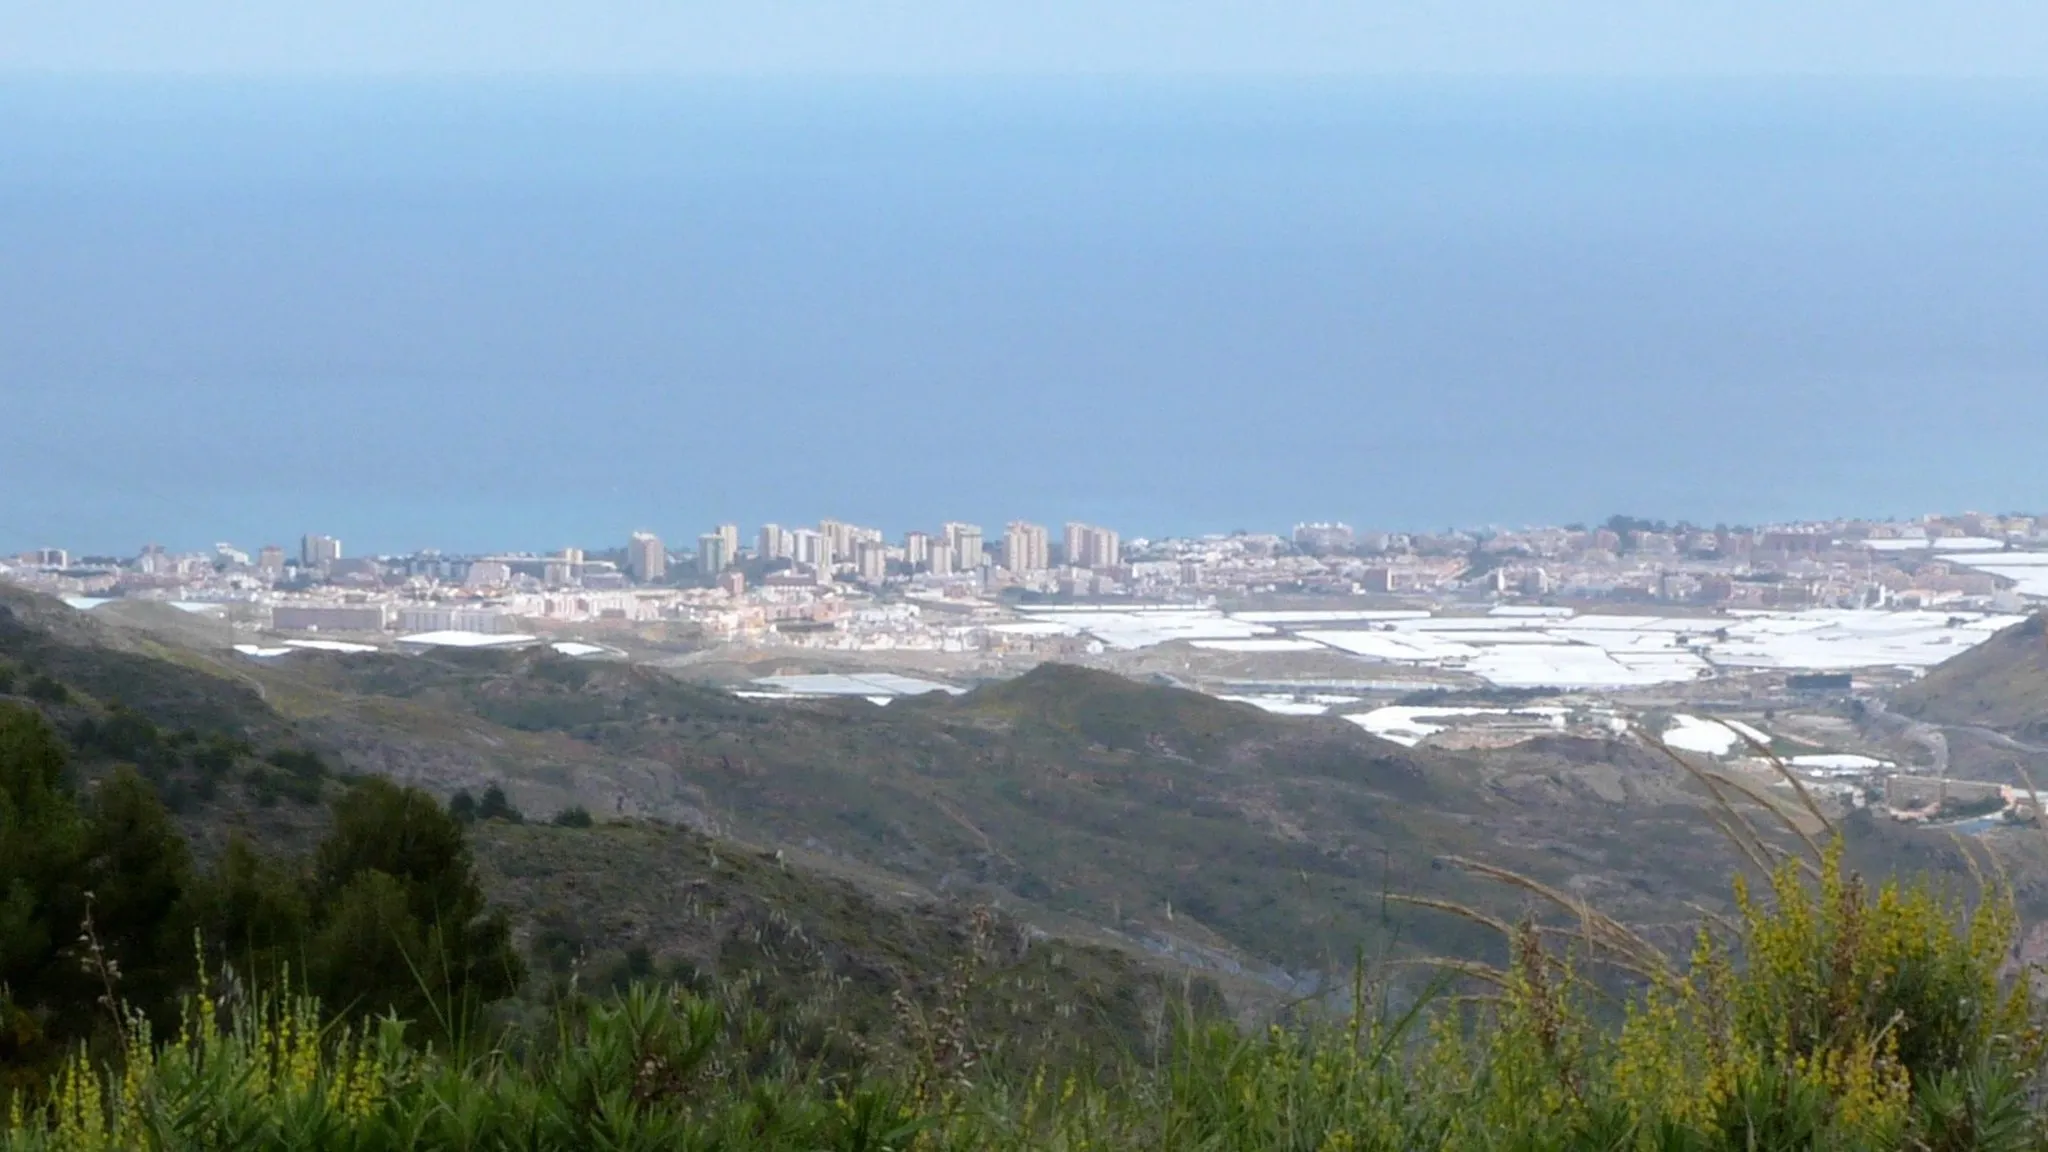 Image of Roquetas de Mar